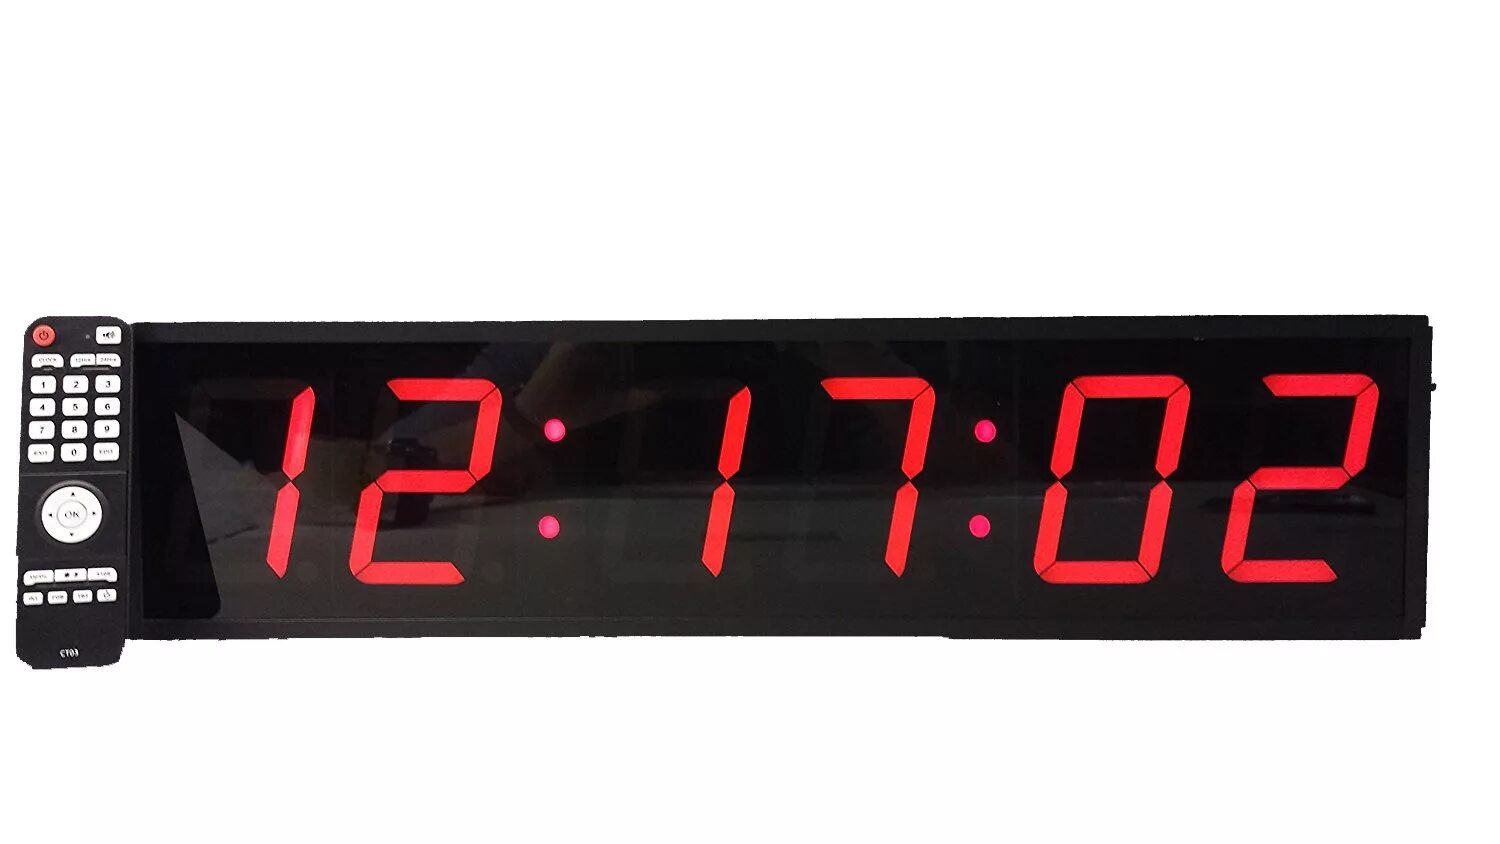 Часы таймер. Часы настенные Digital led Clock. Часы таймер настольные электронные. Электронные часы с секундомером. 17 тыс часов